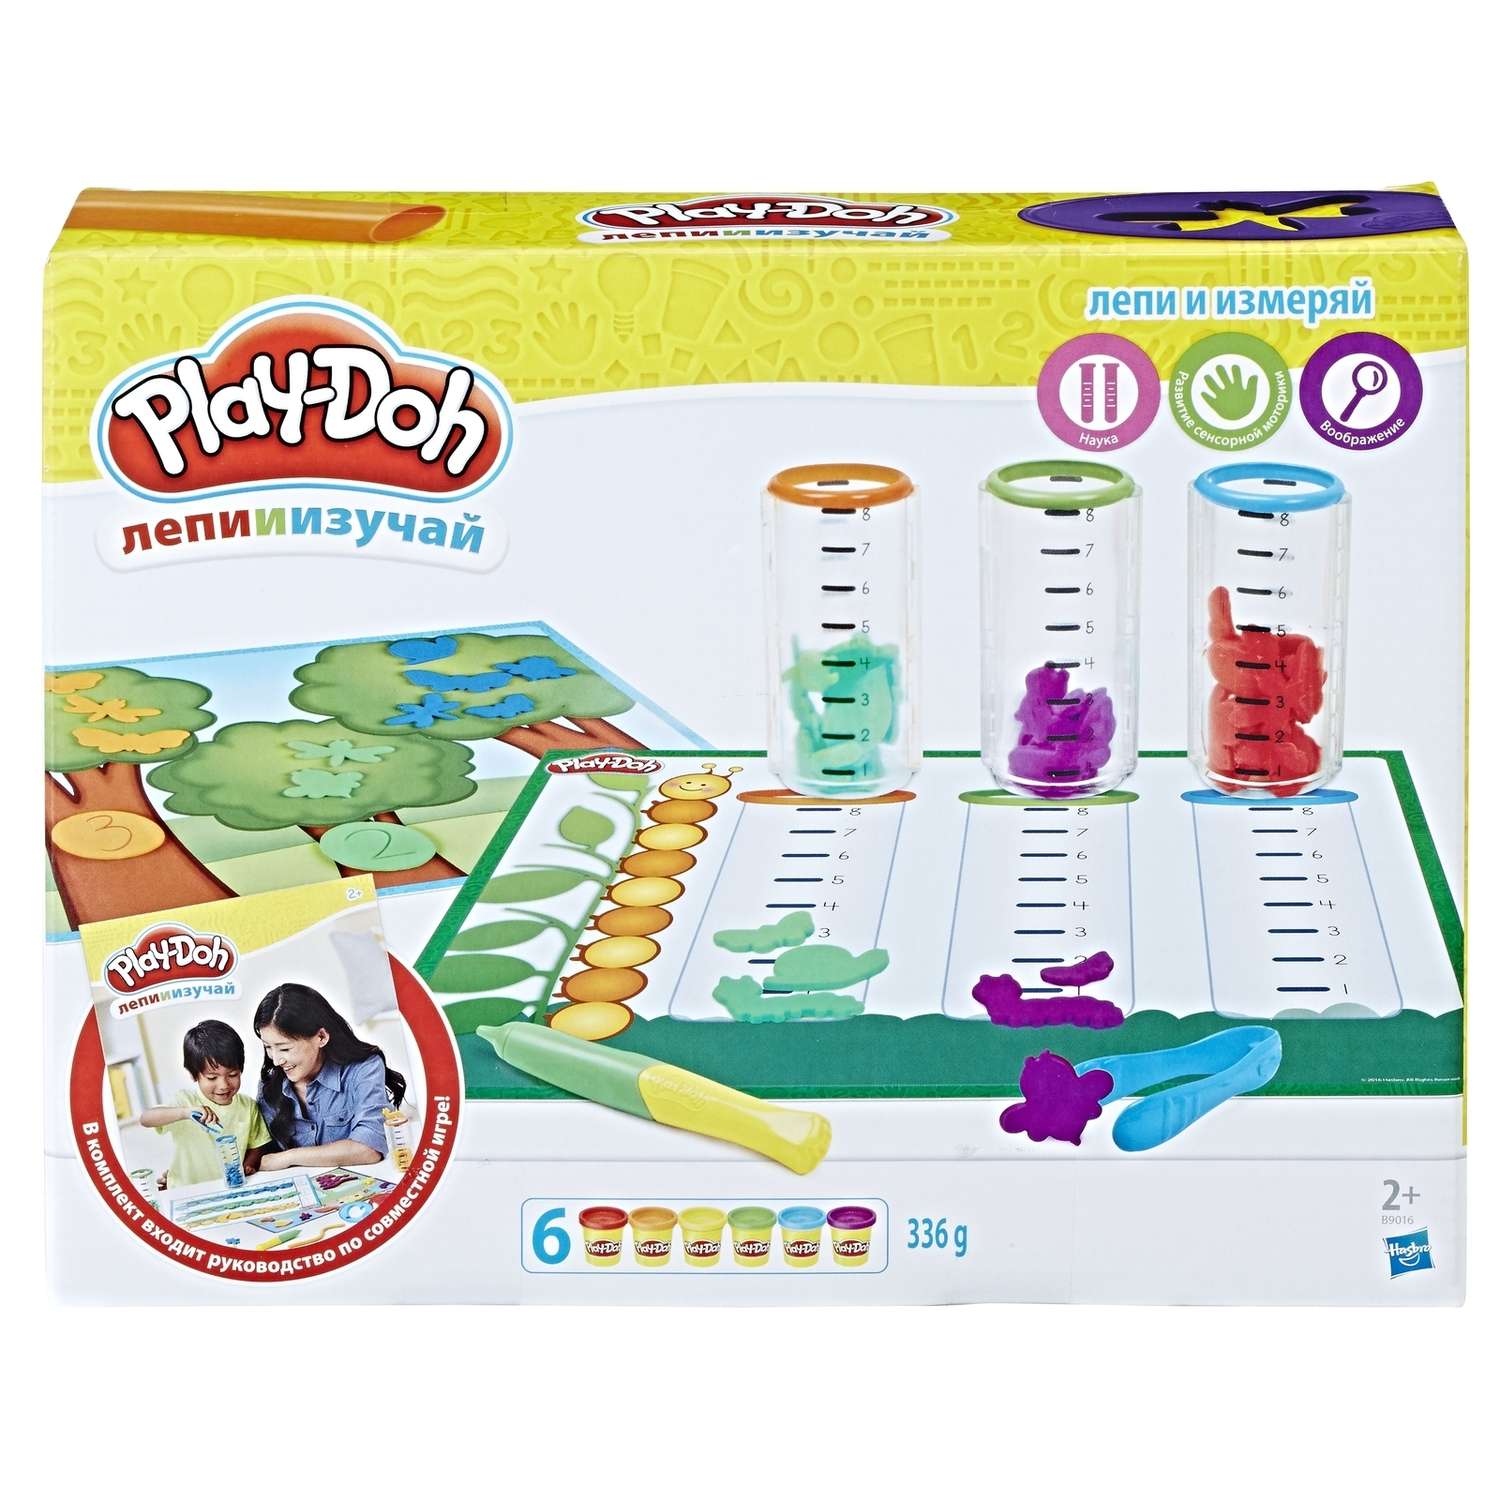 Игровой набор Play-Doh Сделай и измерь - фото 1